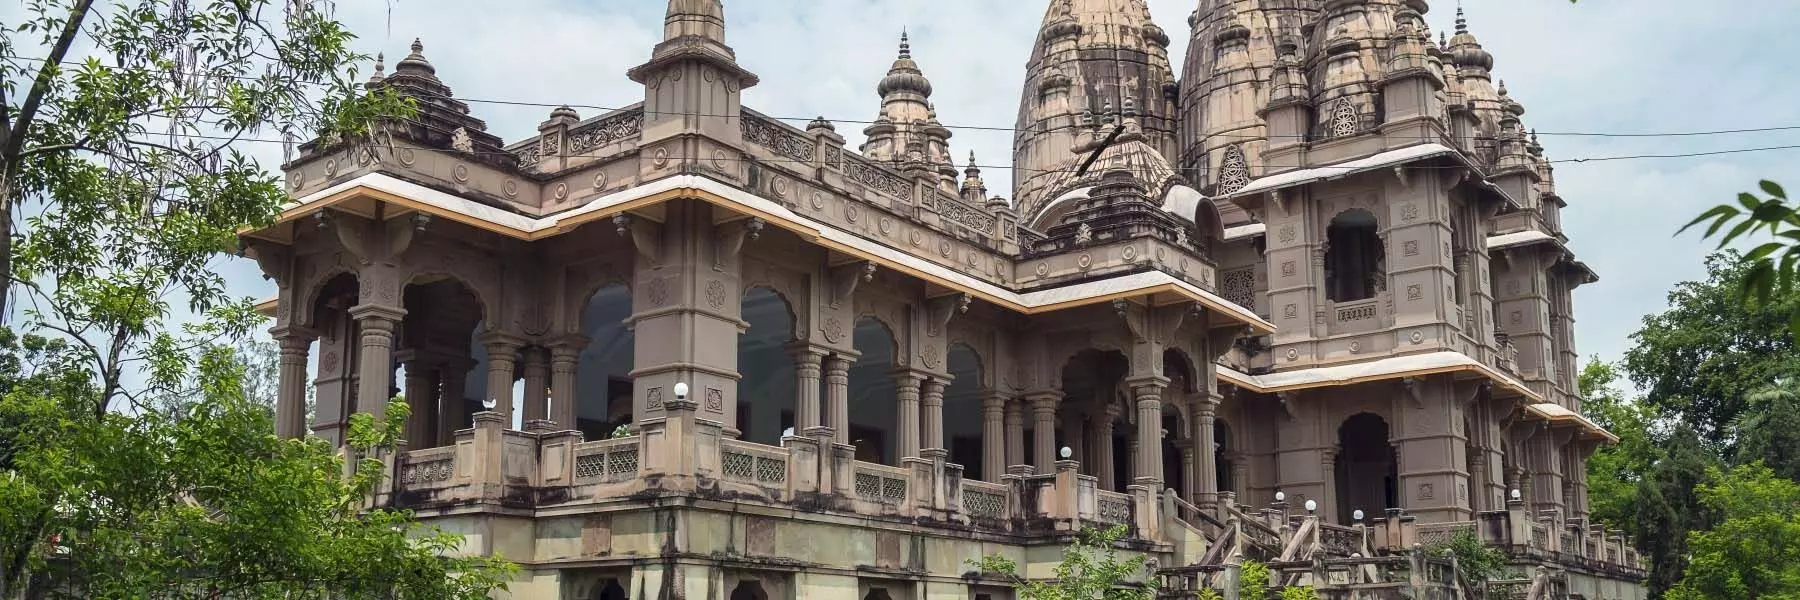 Tourism: नौलखा मंदिर से भगवान कृष्ण से है खास जुड़ाव जाने अद्भुत कथा